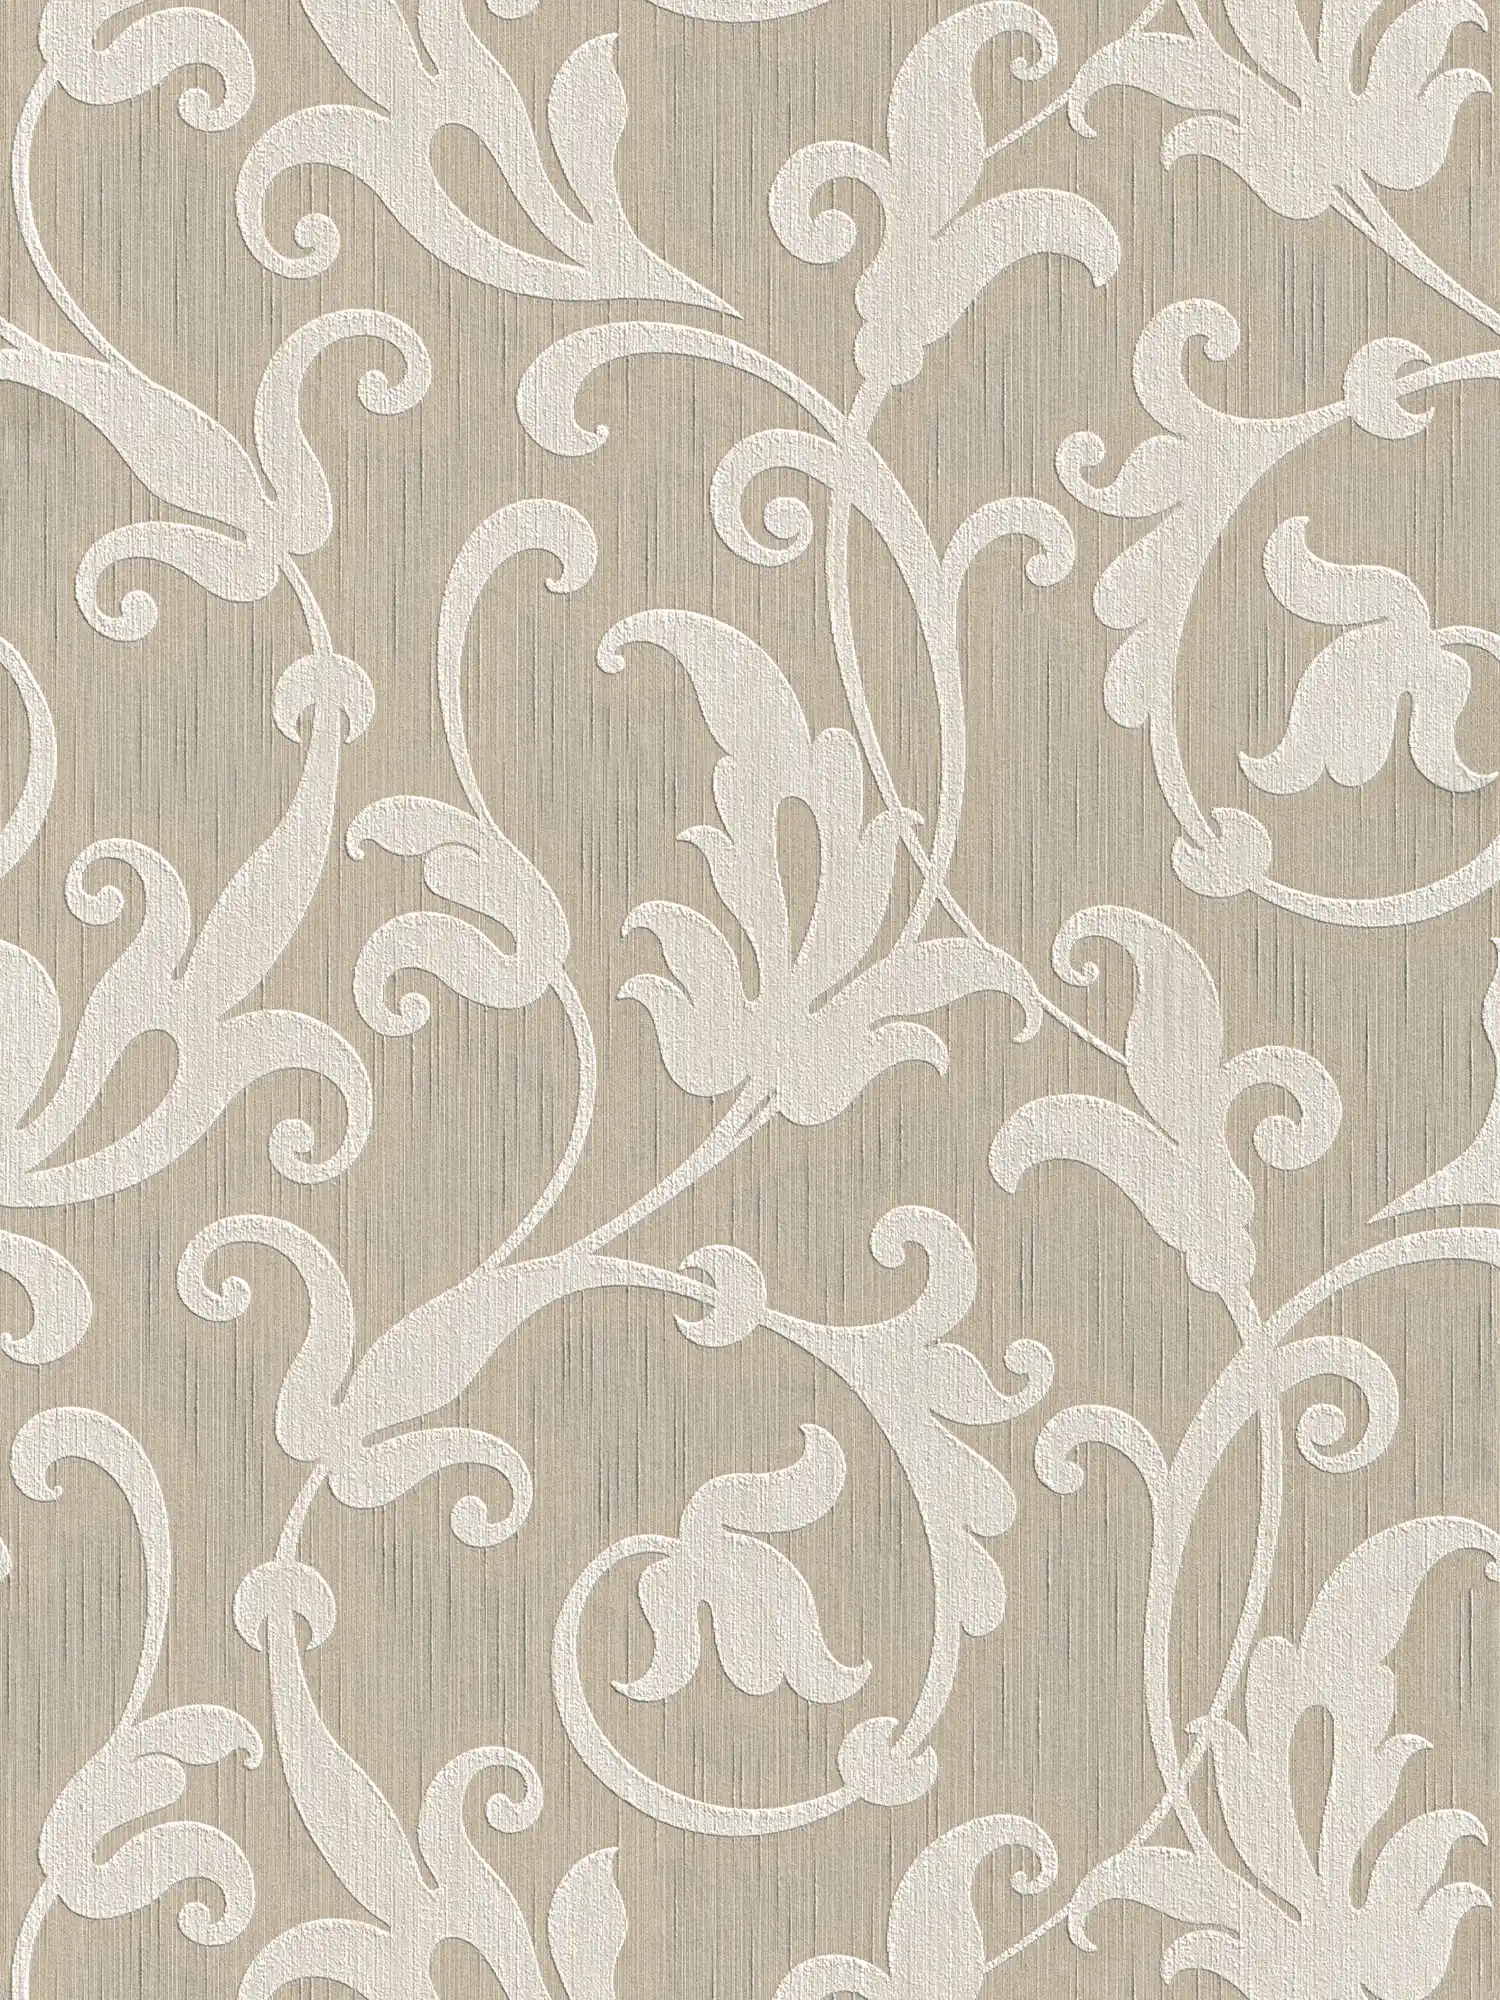 Textil Tapete mit Ornamenten geprägt – Beige, Silber
